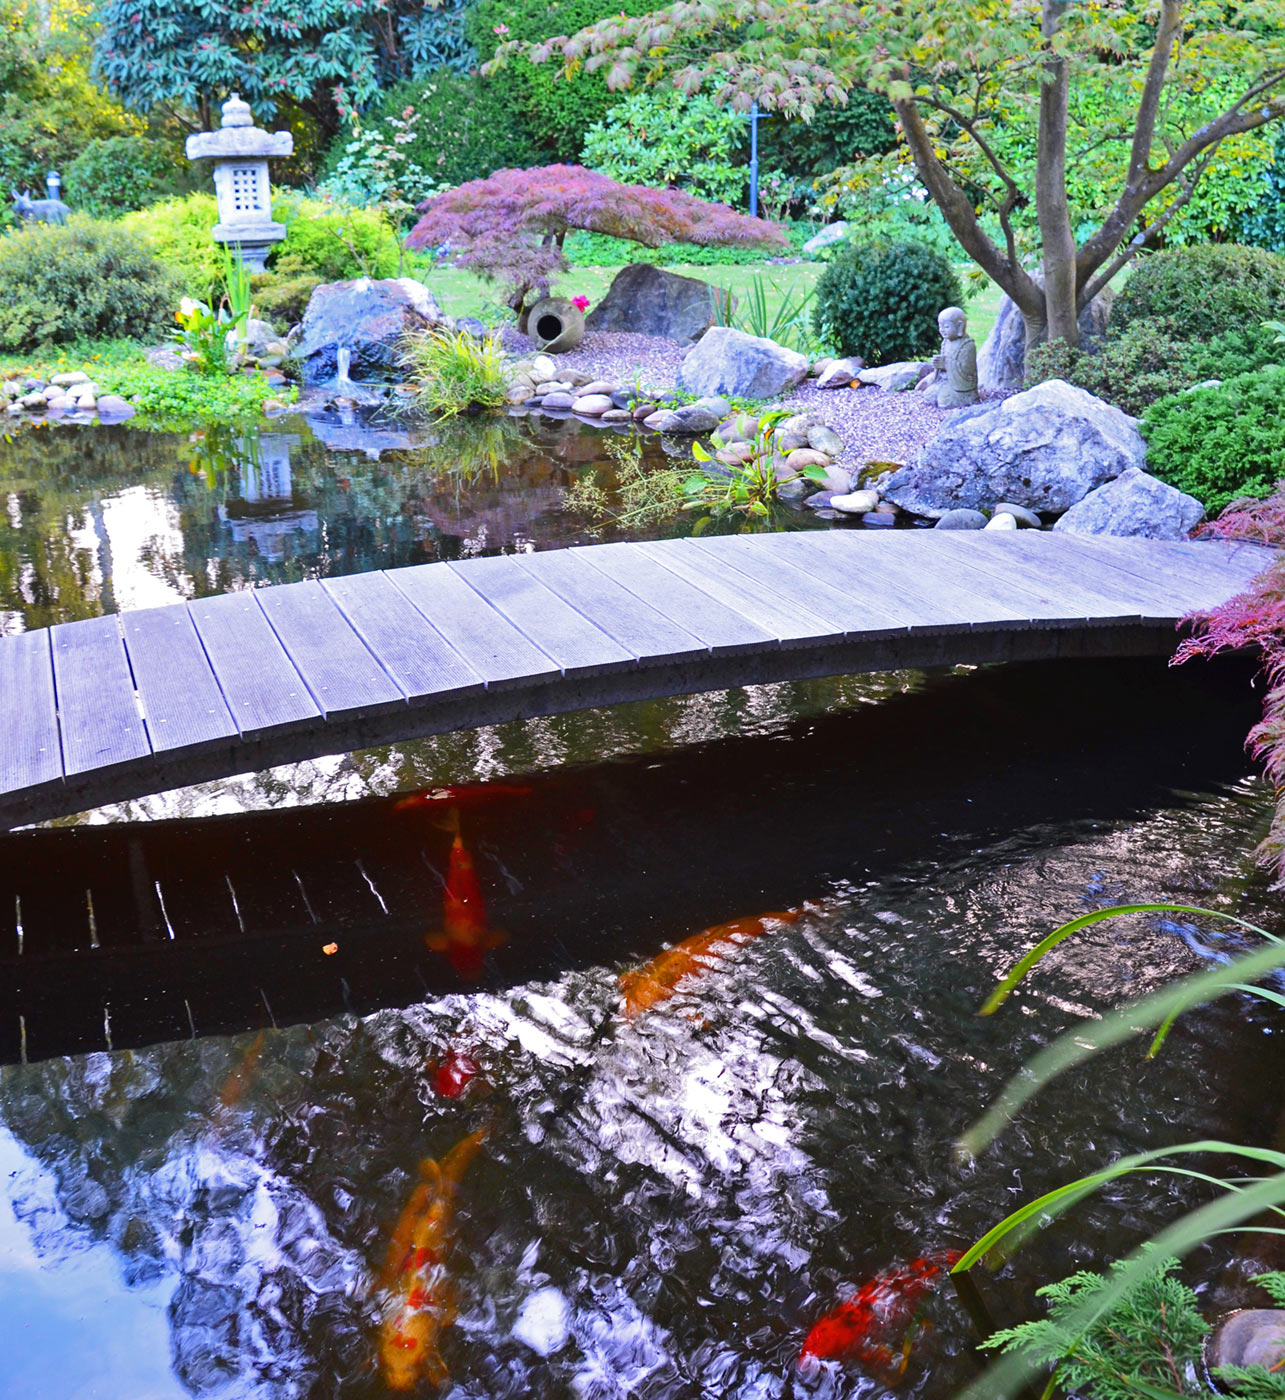 Japanischer Garten mit einer kleinen Brücke über einen Teich, in dem Kois schwimmen.